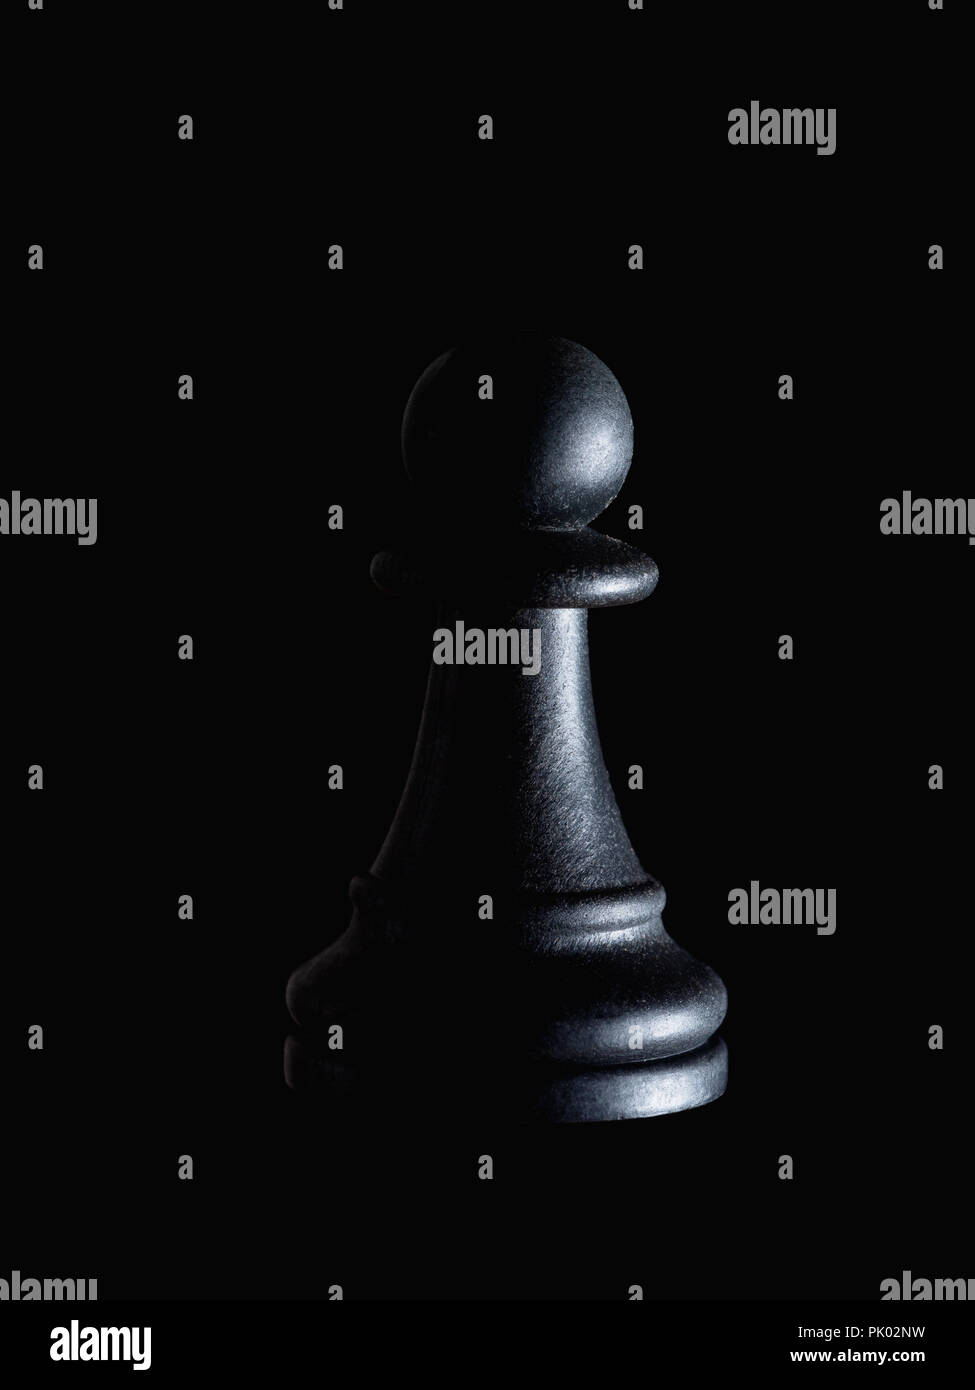 Einzelne schwarze Schachfigur Schachfigur auf Schwarz, dramatische Beleuchtung. Manipulation, Ohnmacht, versteckte Opfer Konzept. Stockfoto